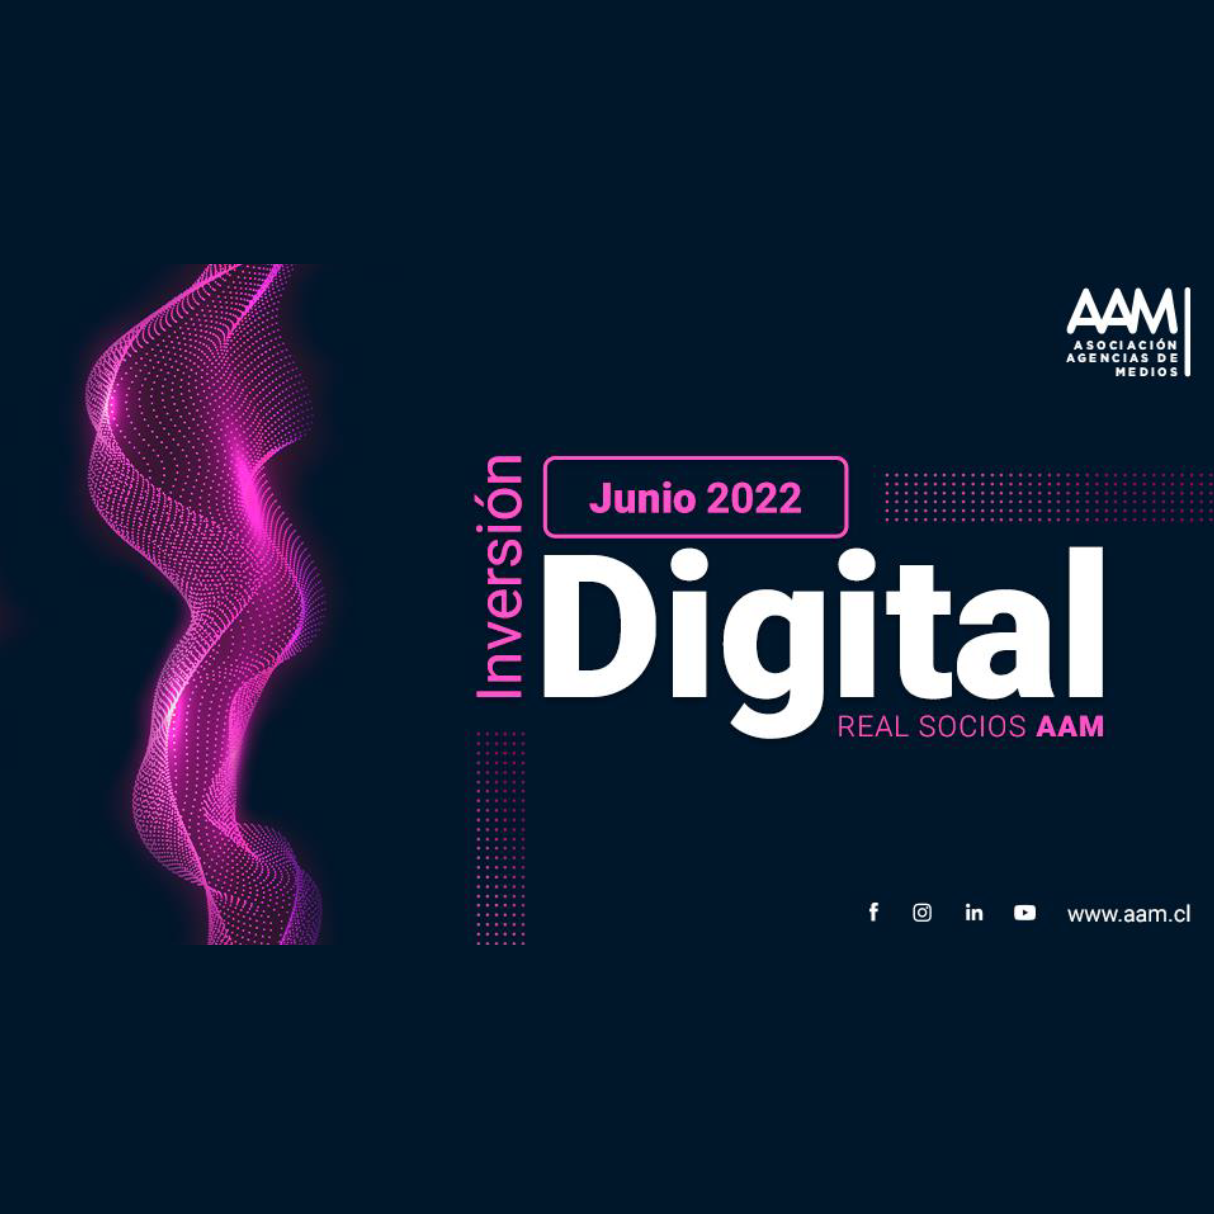 Inversión digital real socios AAM – junio 2022